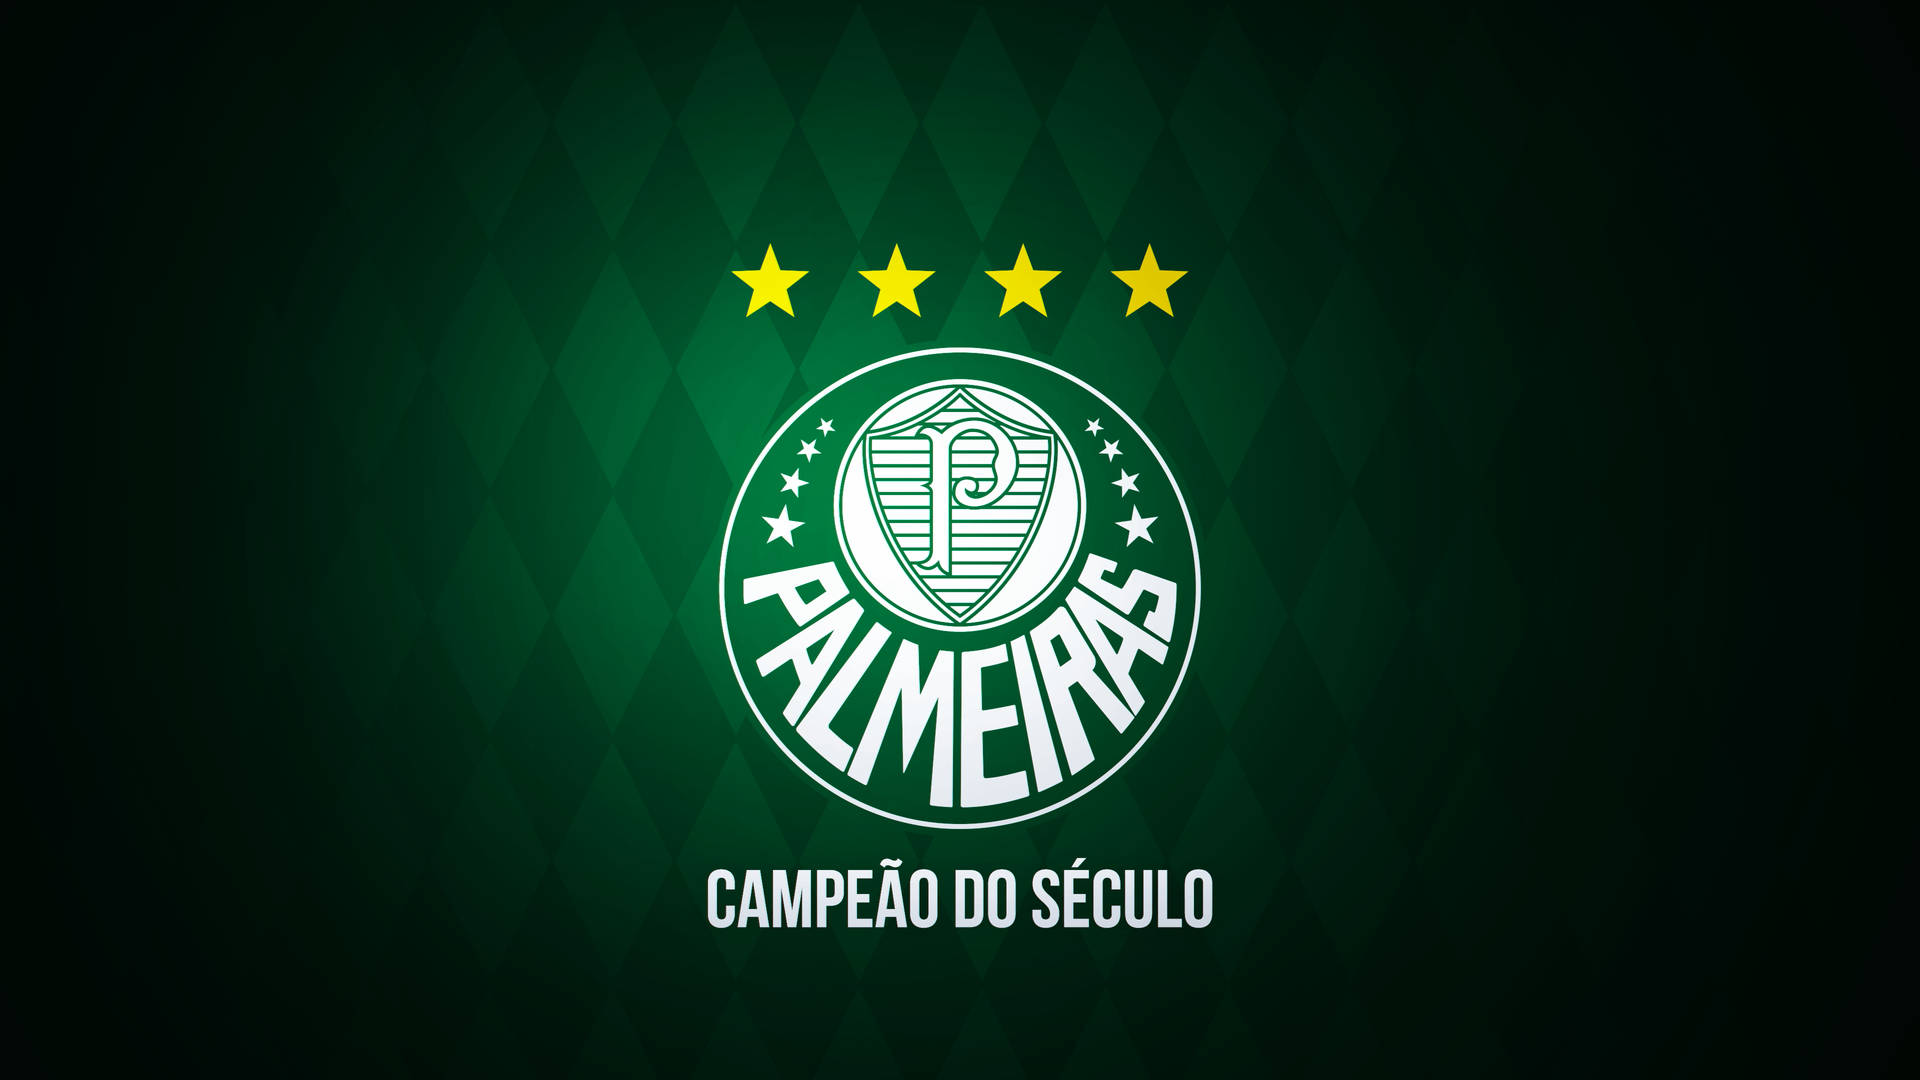 Fondods De Palmeiras